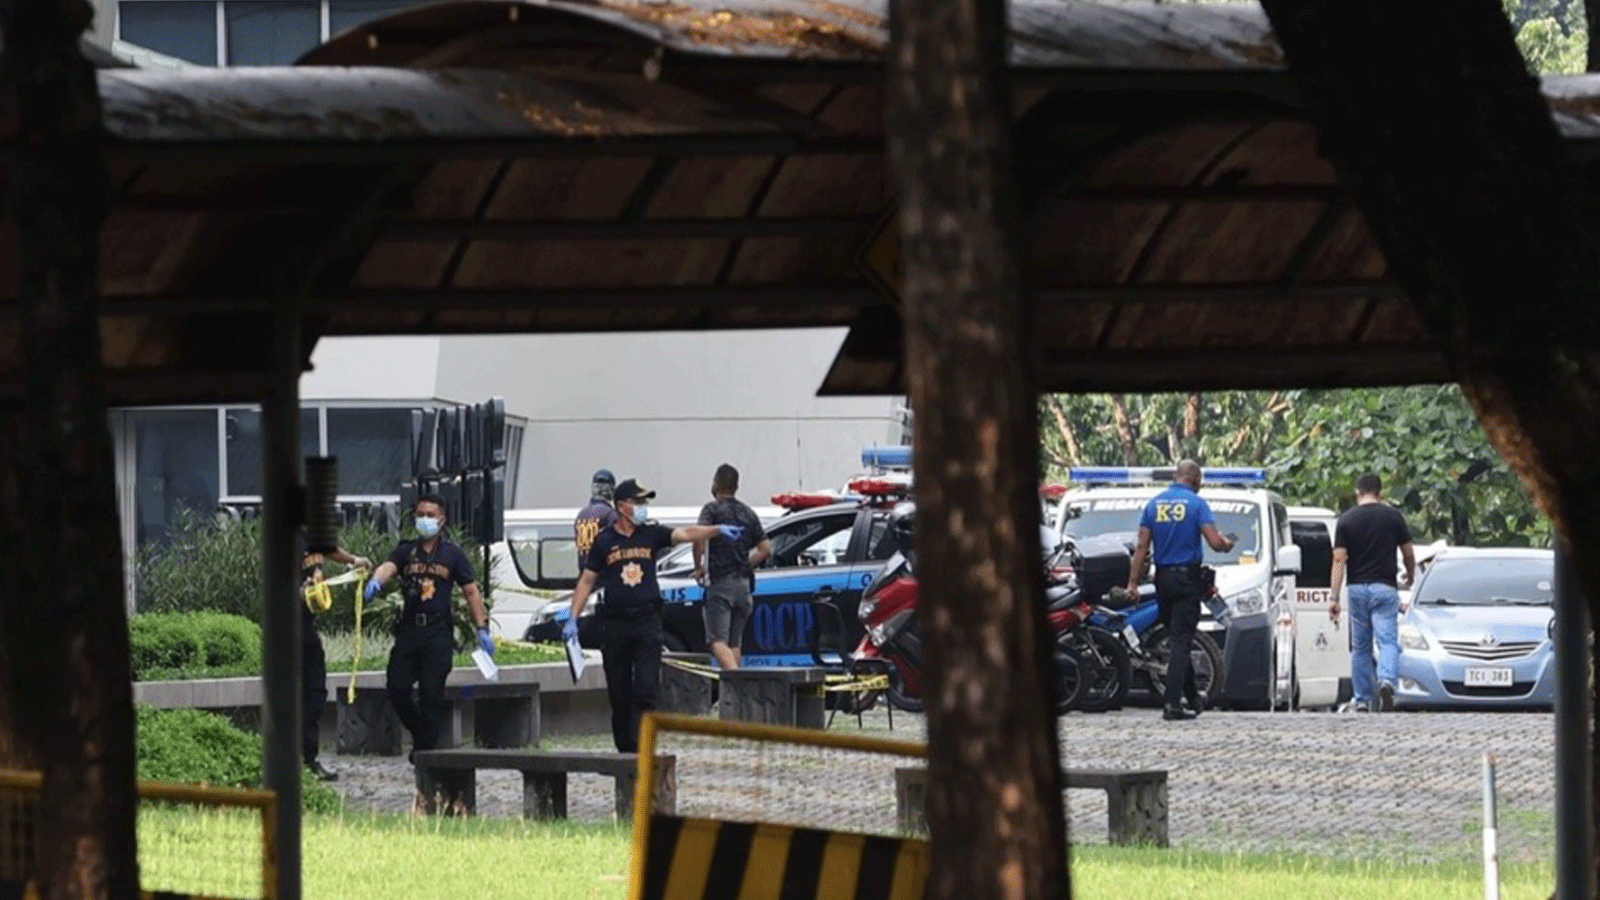 صورة متداولة على تويتر من موقع الجامعة حيث وقع إطلاق النار في مانيلا